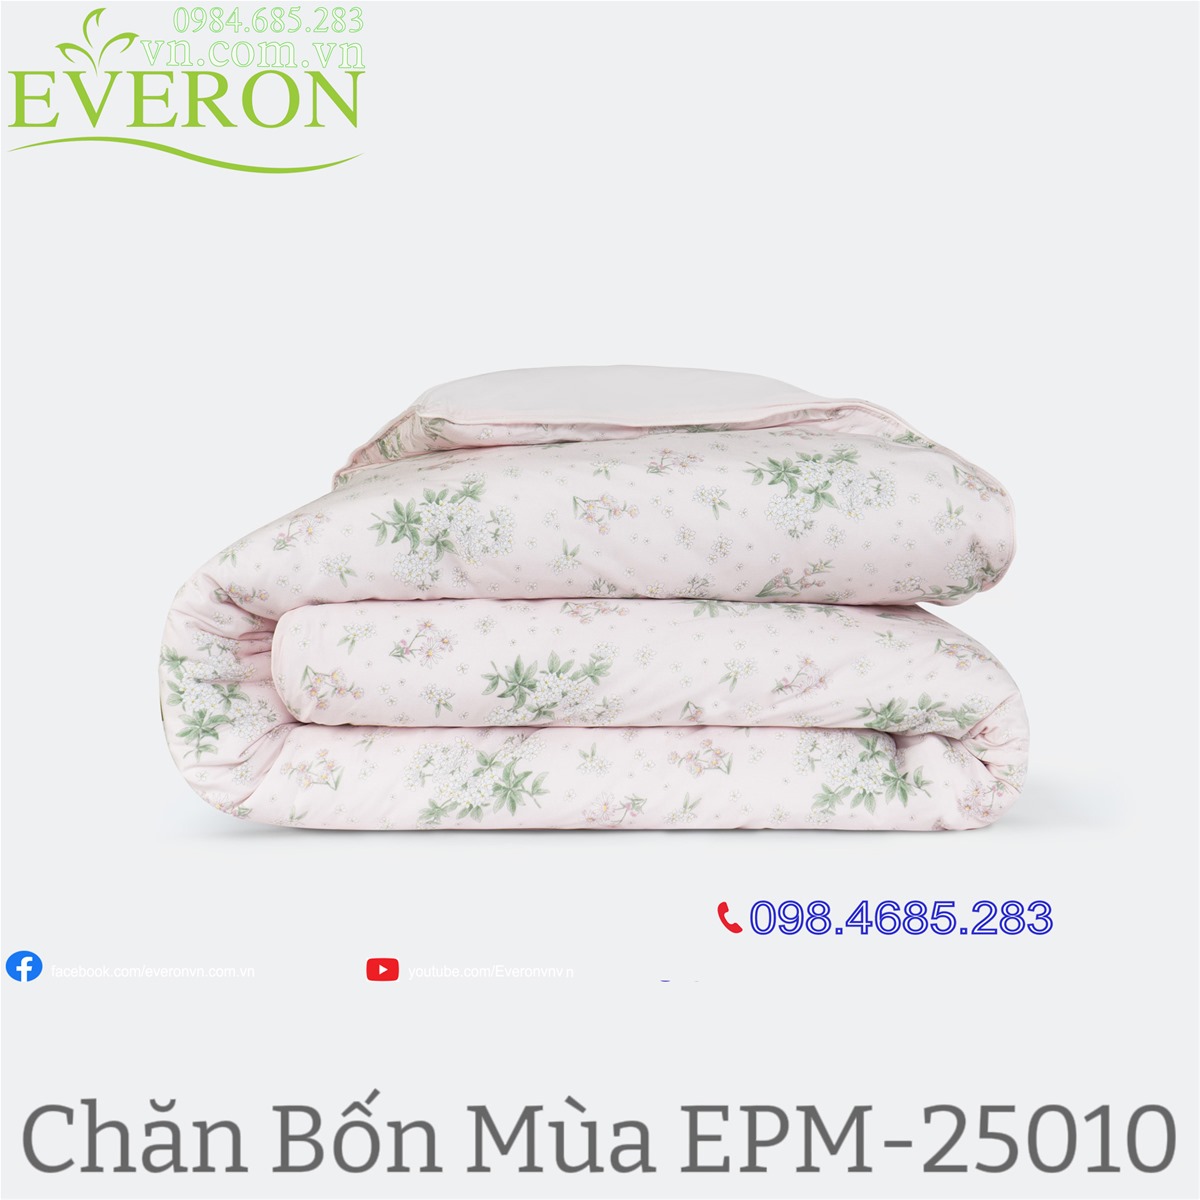 bộ Chăn bốn mùa Everon EPM-25010